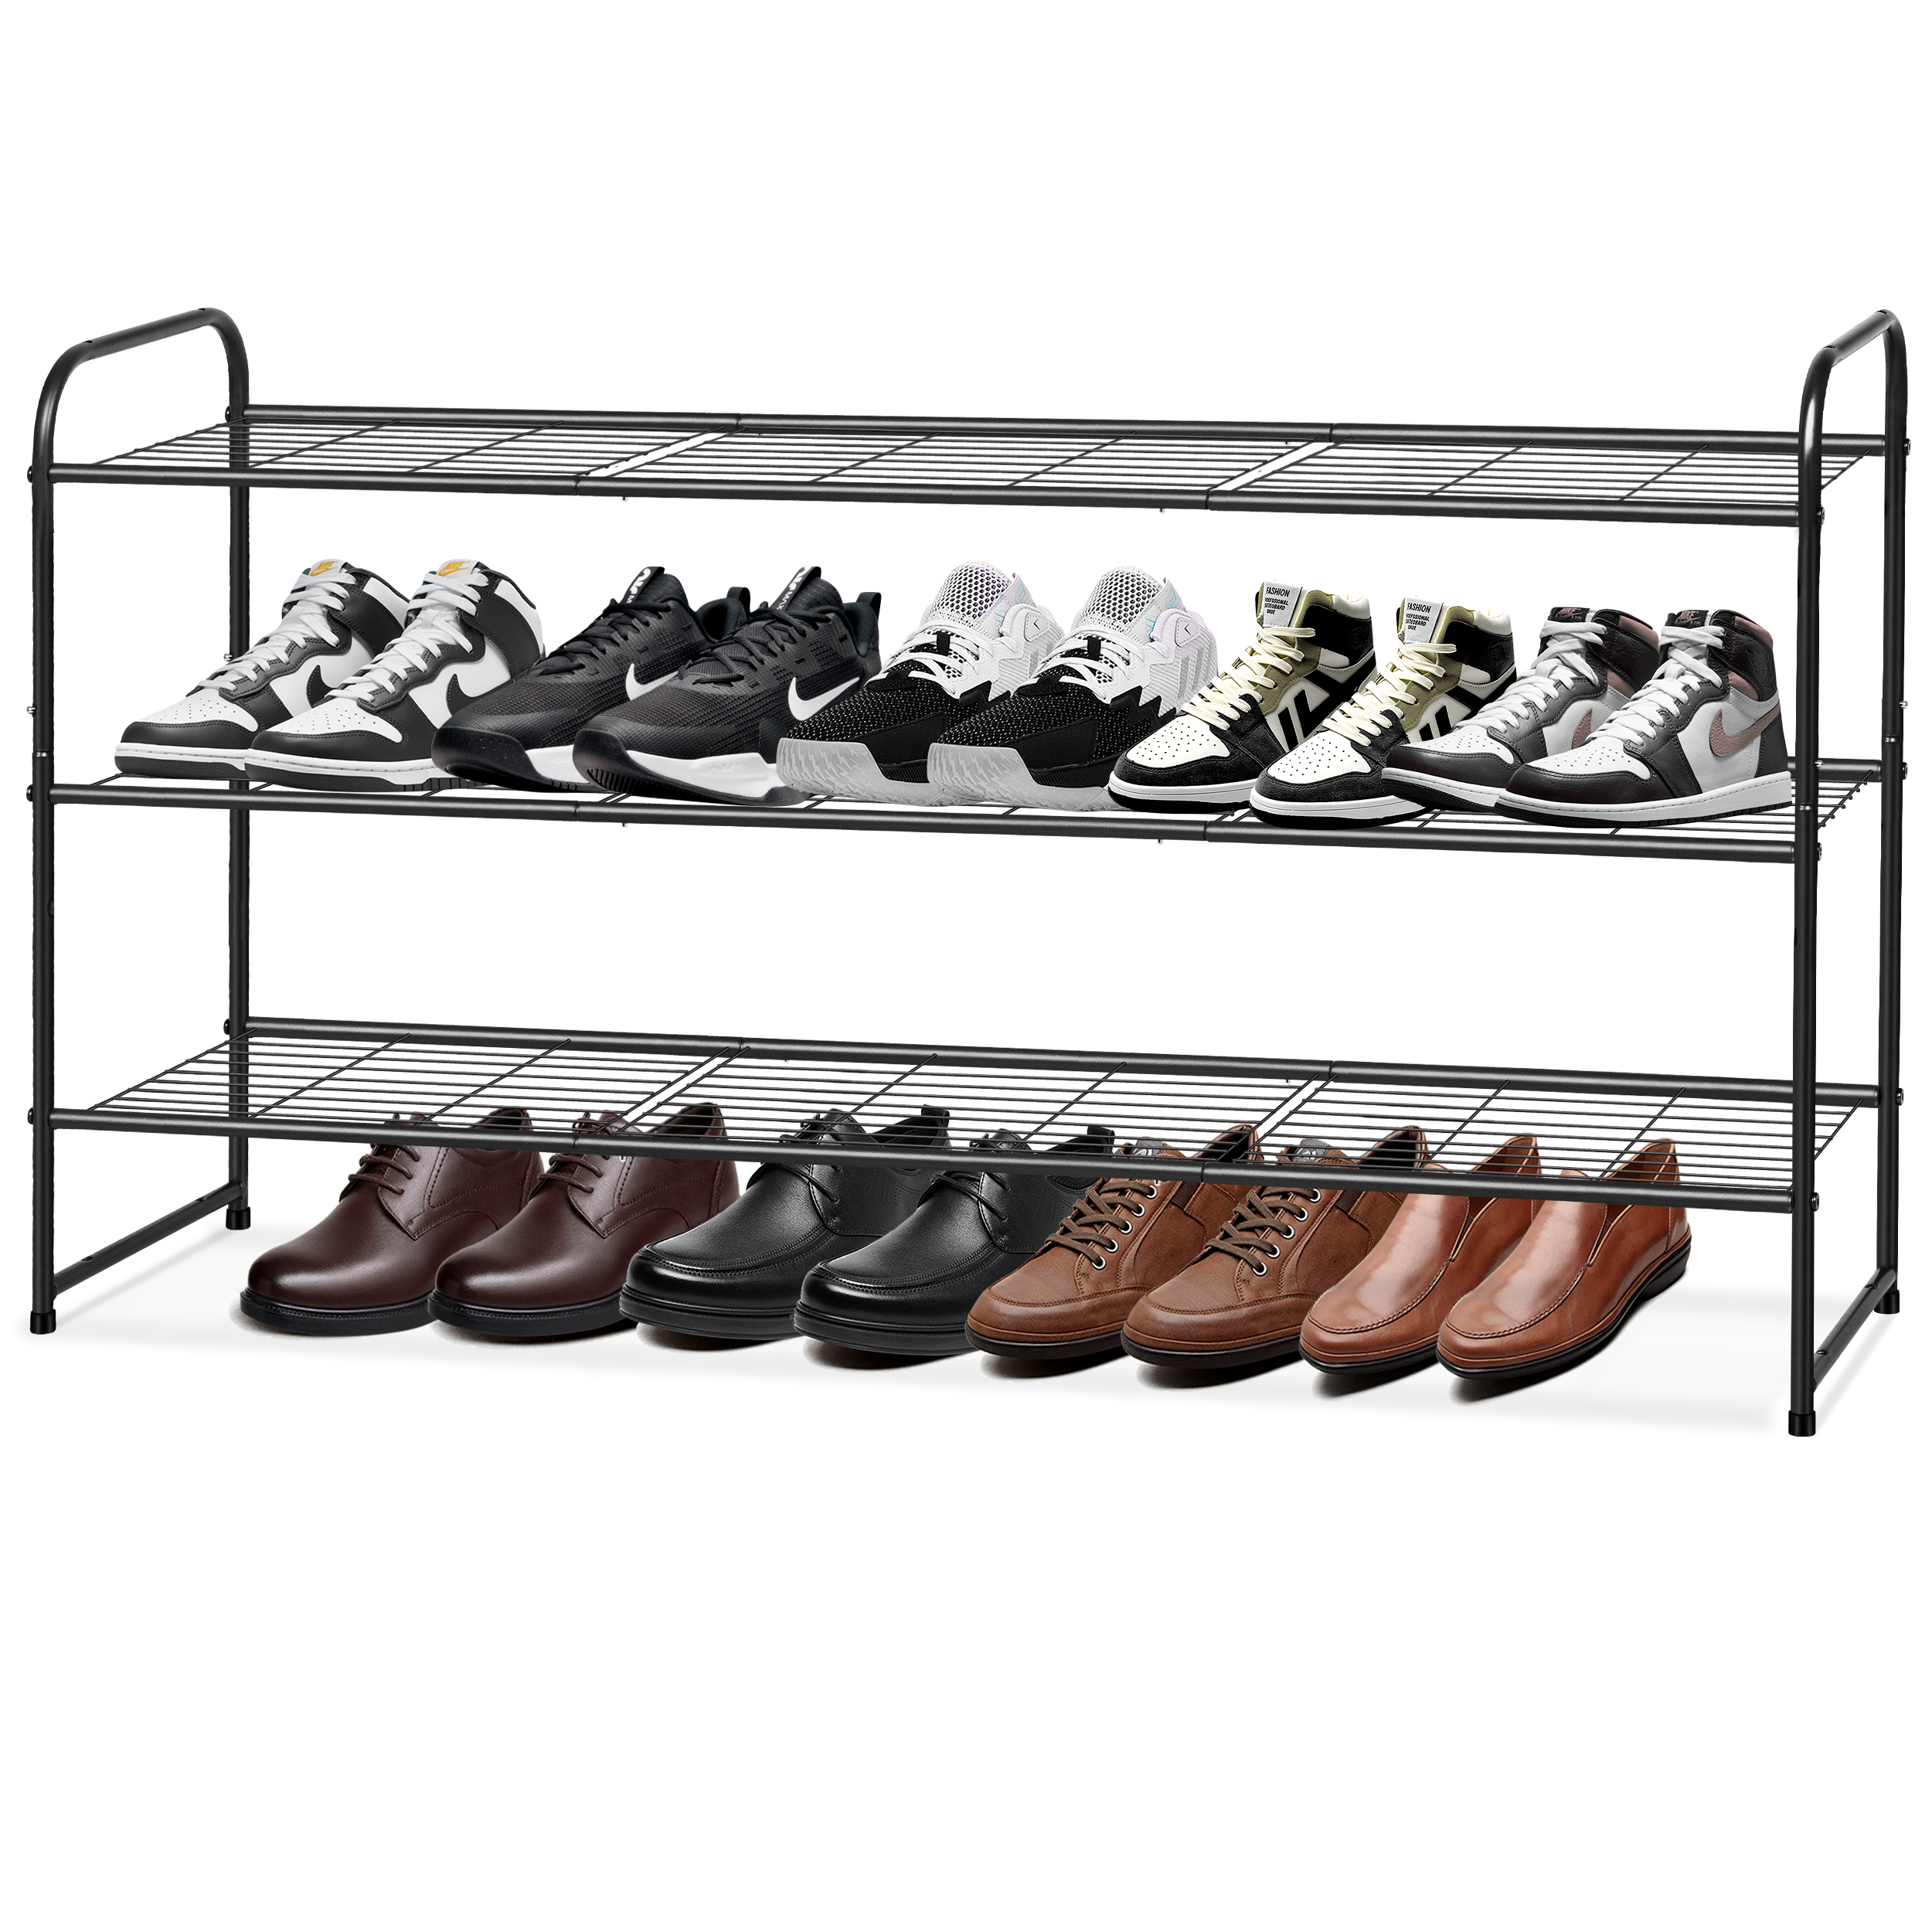 KEETDY 4-Tier Long Shoe Organizer for Closet Floor, Wide Shoe Rack for  Closet, Stackable Shoe Rack for Entryway Metal Shoe Shelf for 30 Pairs Men